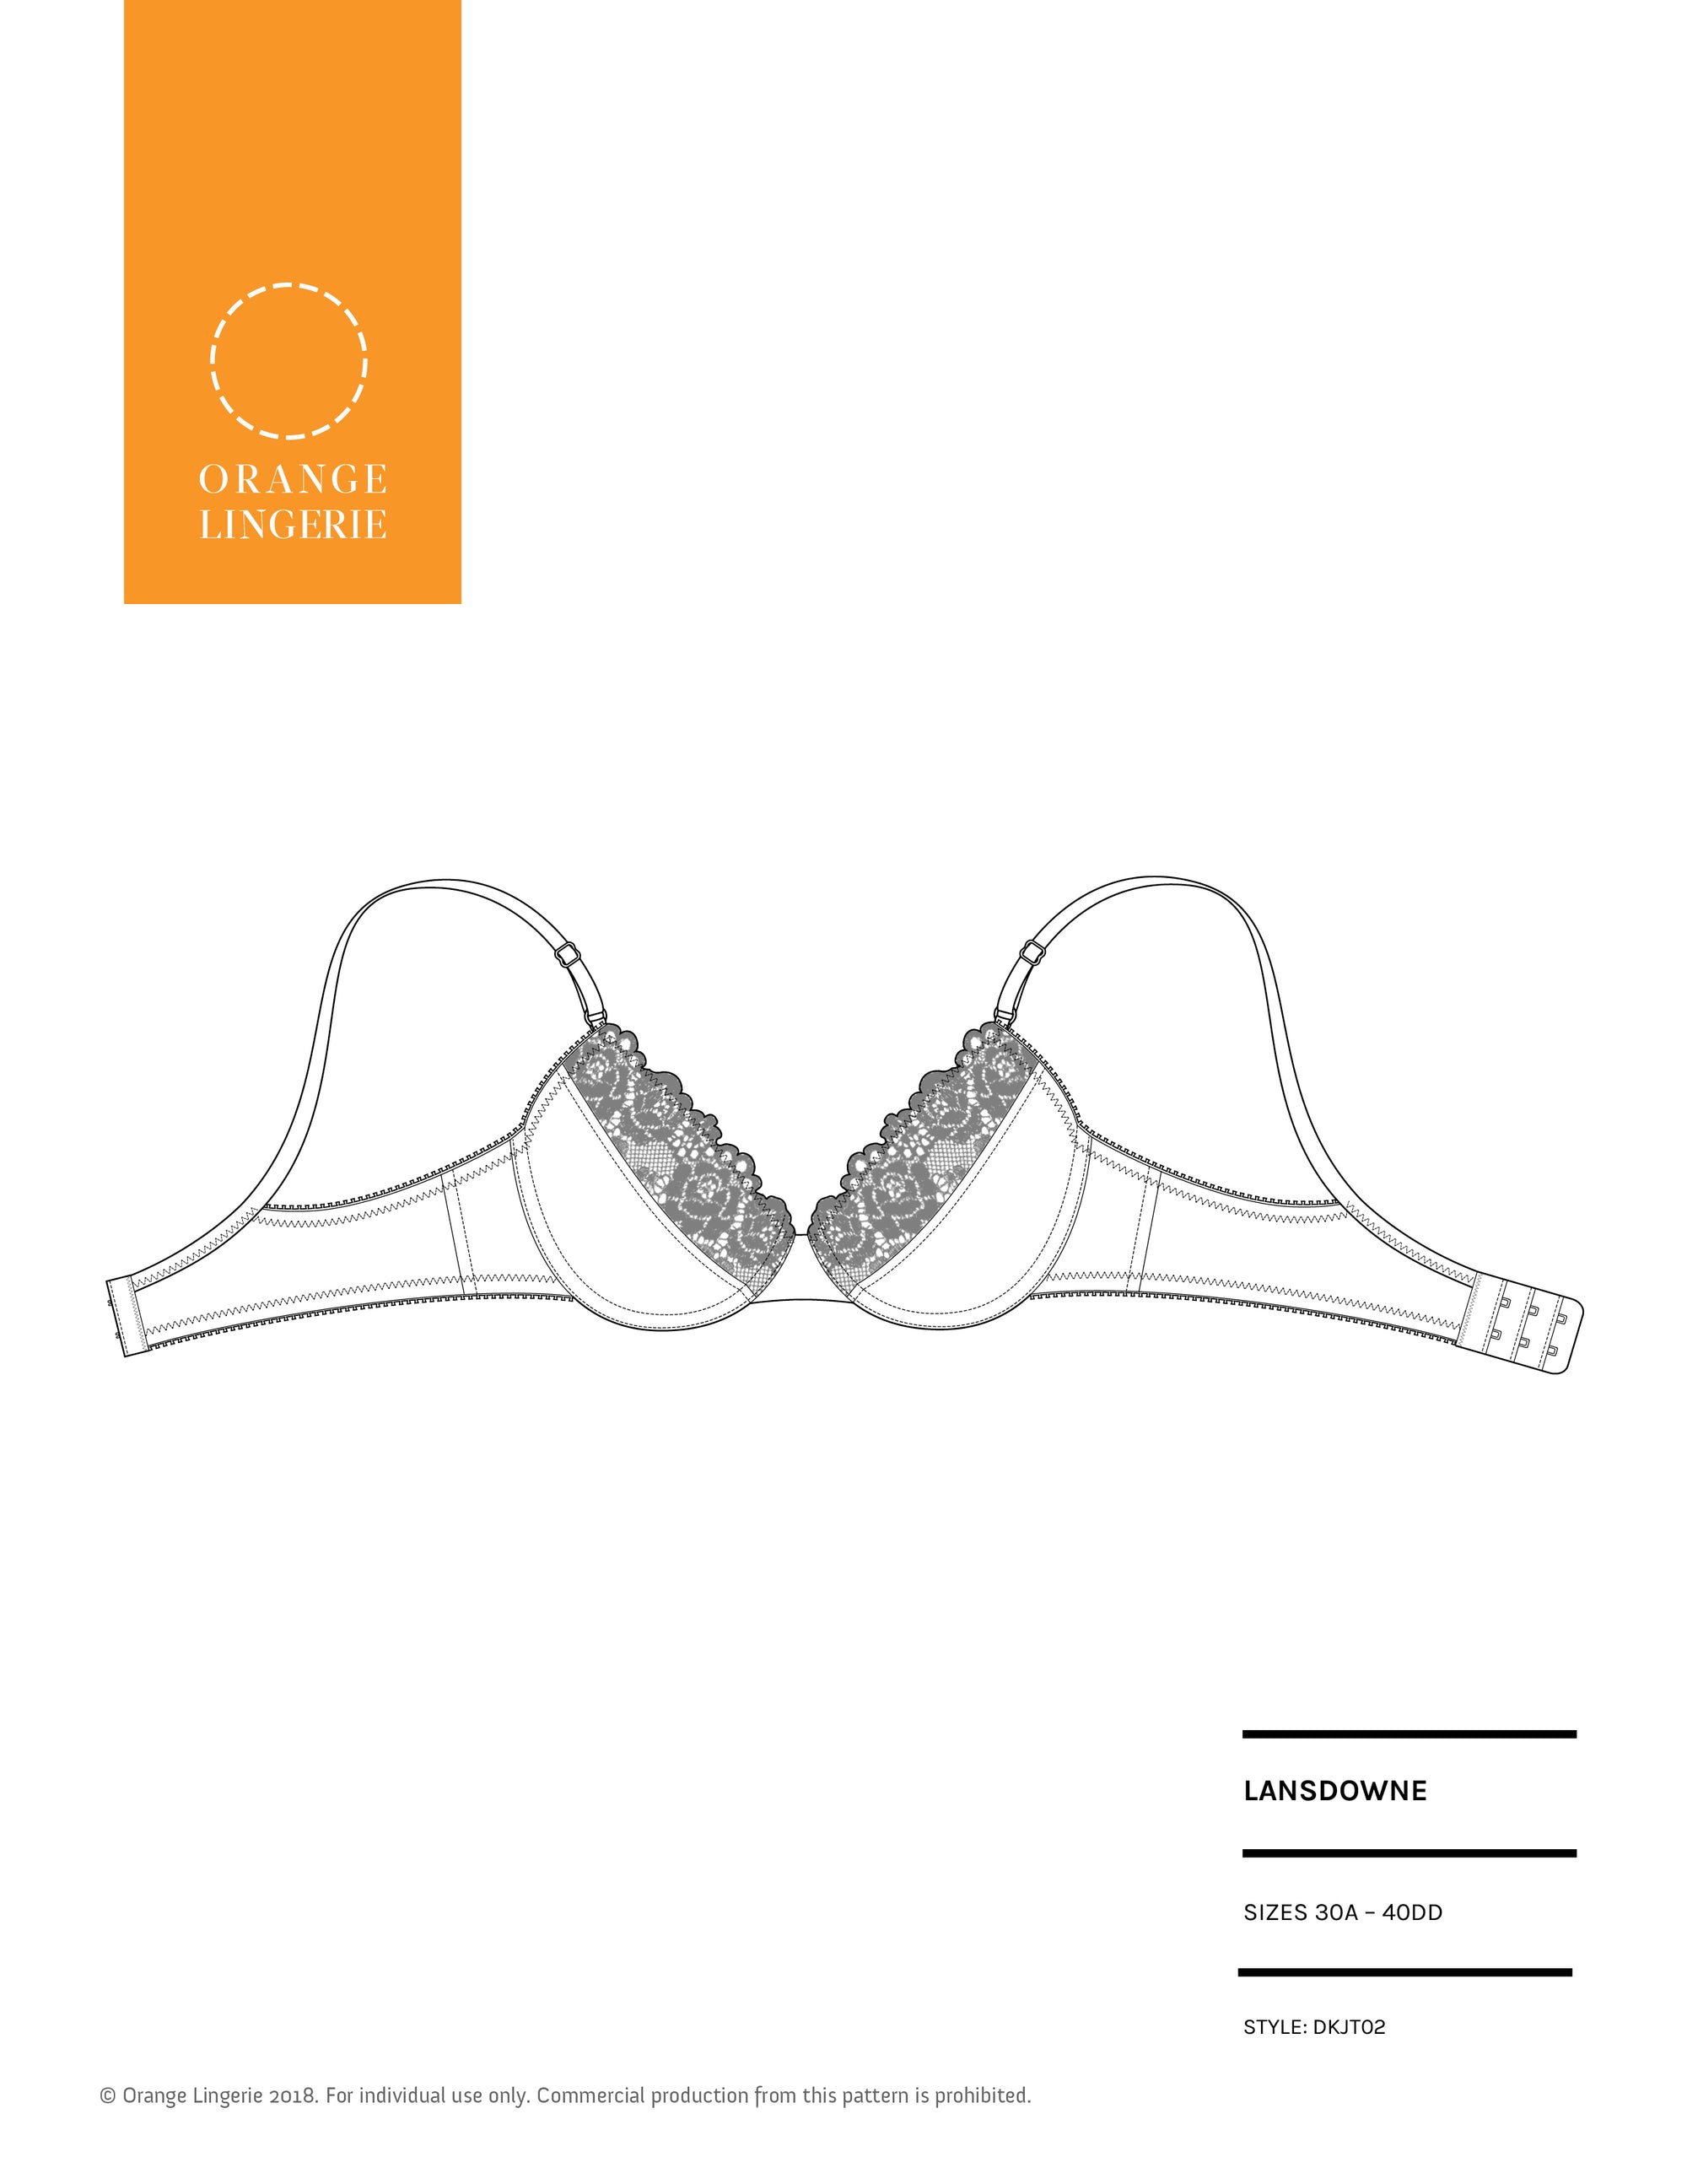 Bra Sewing Lingerie Pattern PDF Helle Sizes: 80AA / 80A / 80B / 80C / 80D 